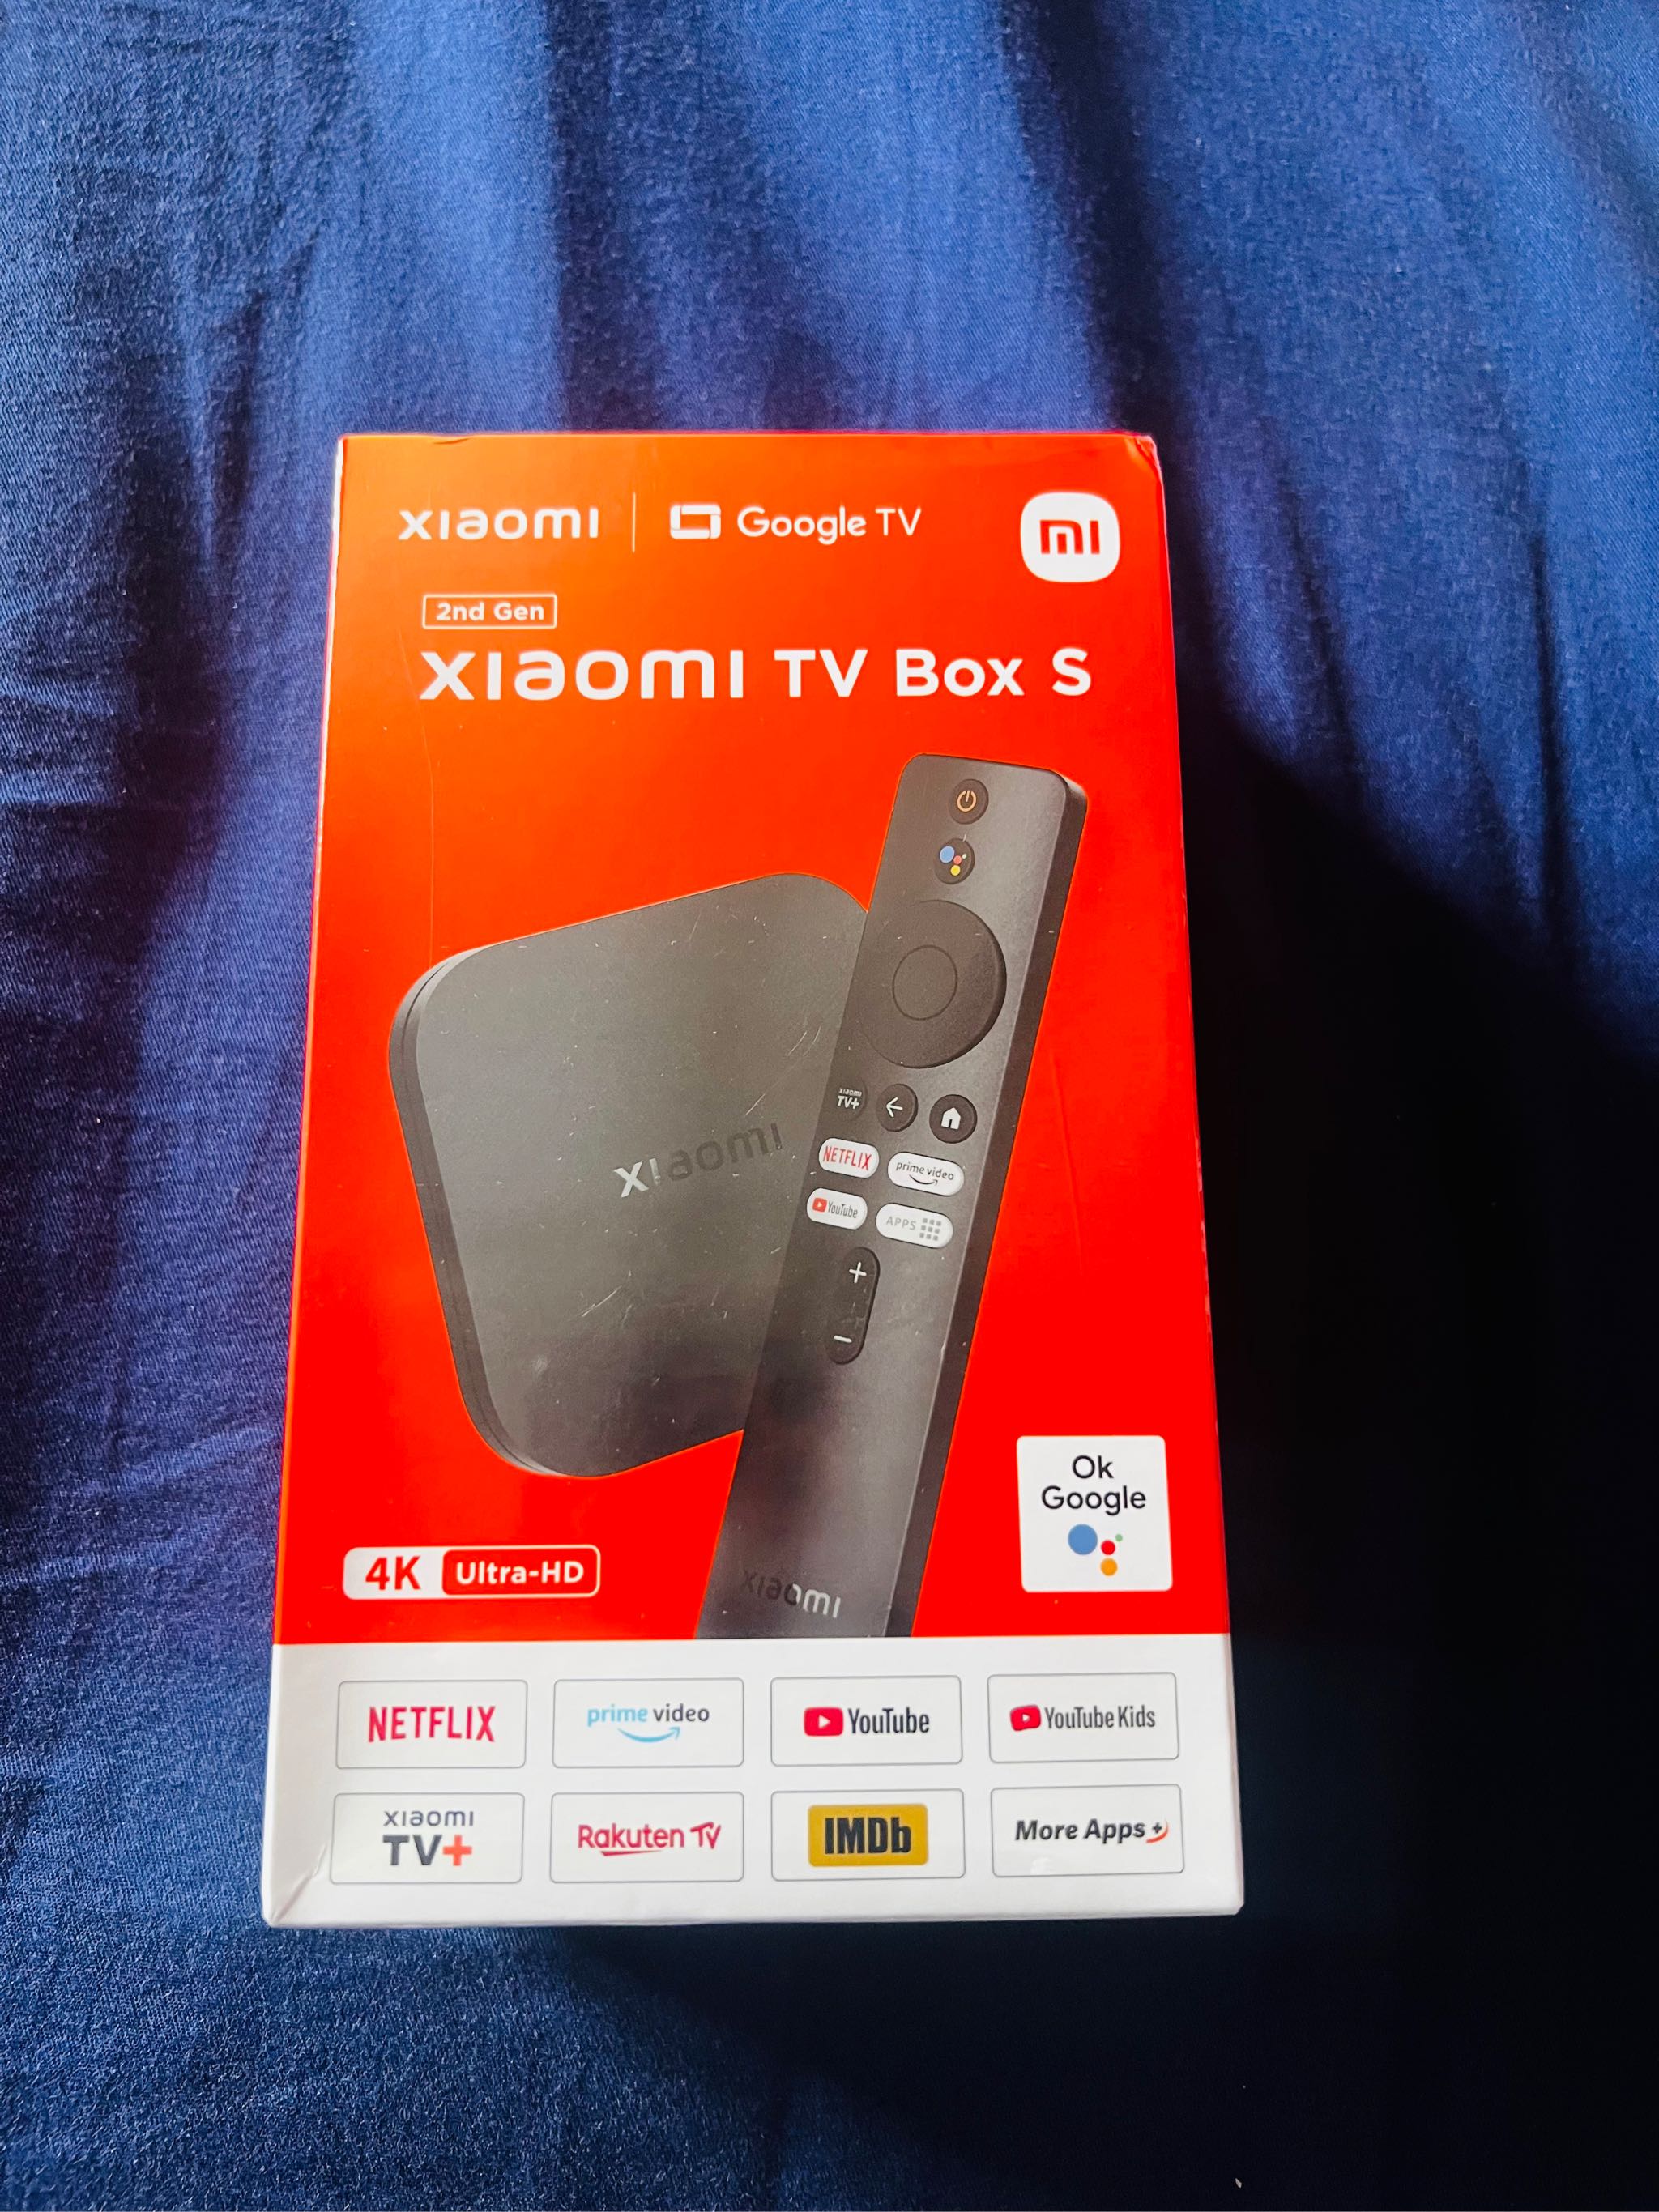 Global Version Xiaomi Mi TV Box S 2nd Gen 4K Ultra HD BT5.2 2GB